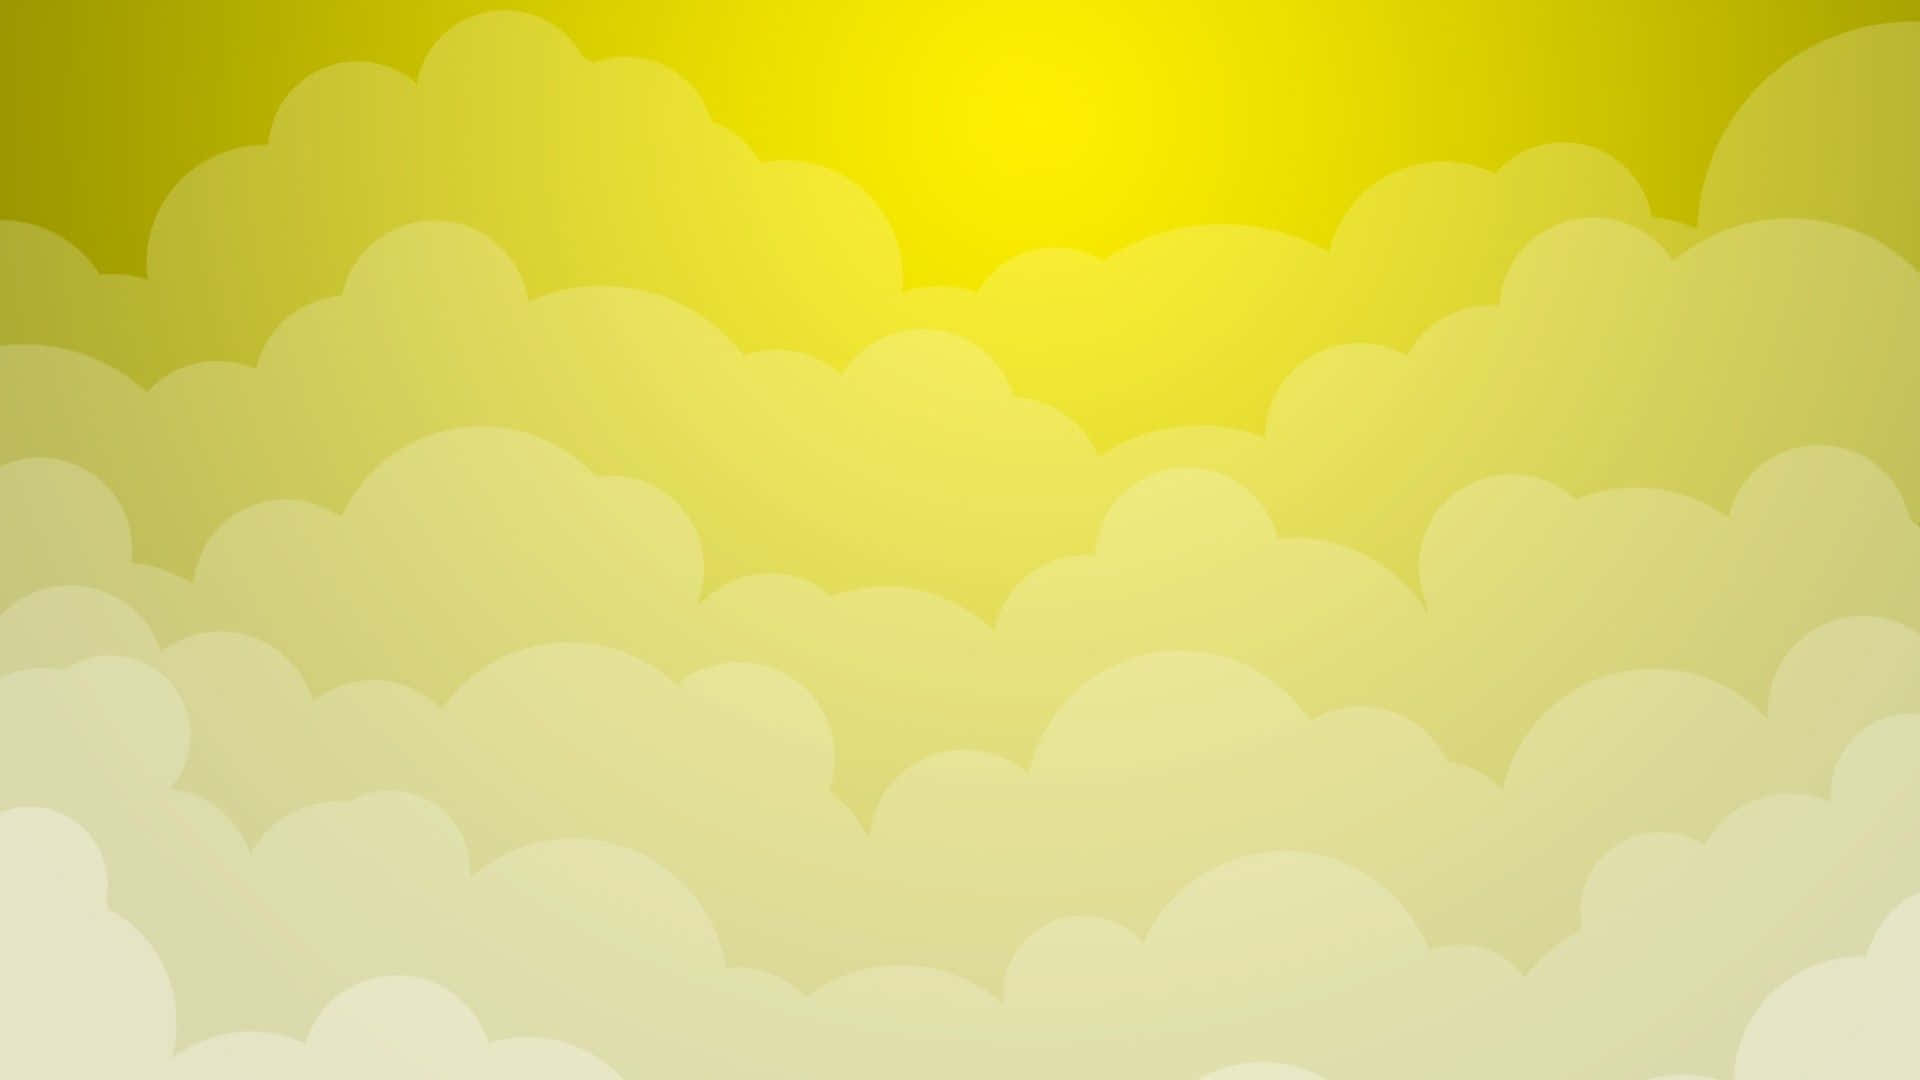 Unsol Amarillo Y Nubes En El Cielo Fondo de pantalla